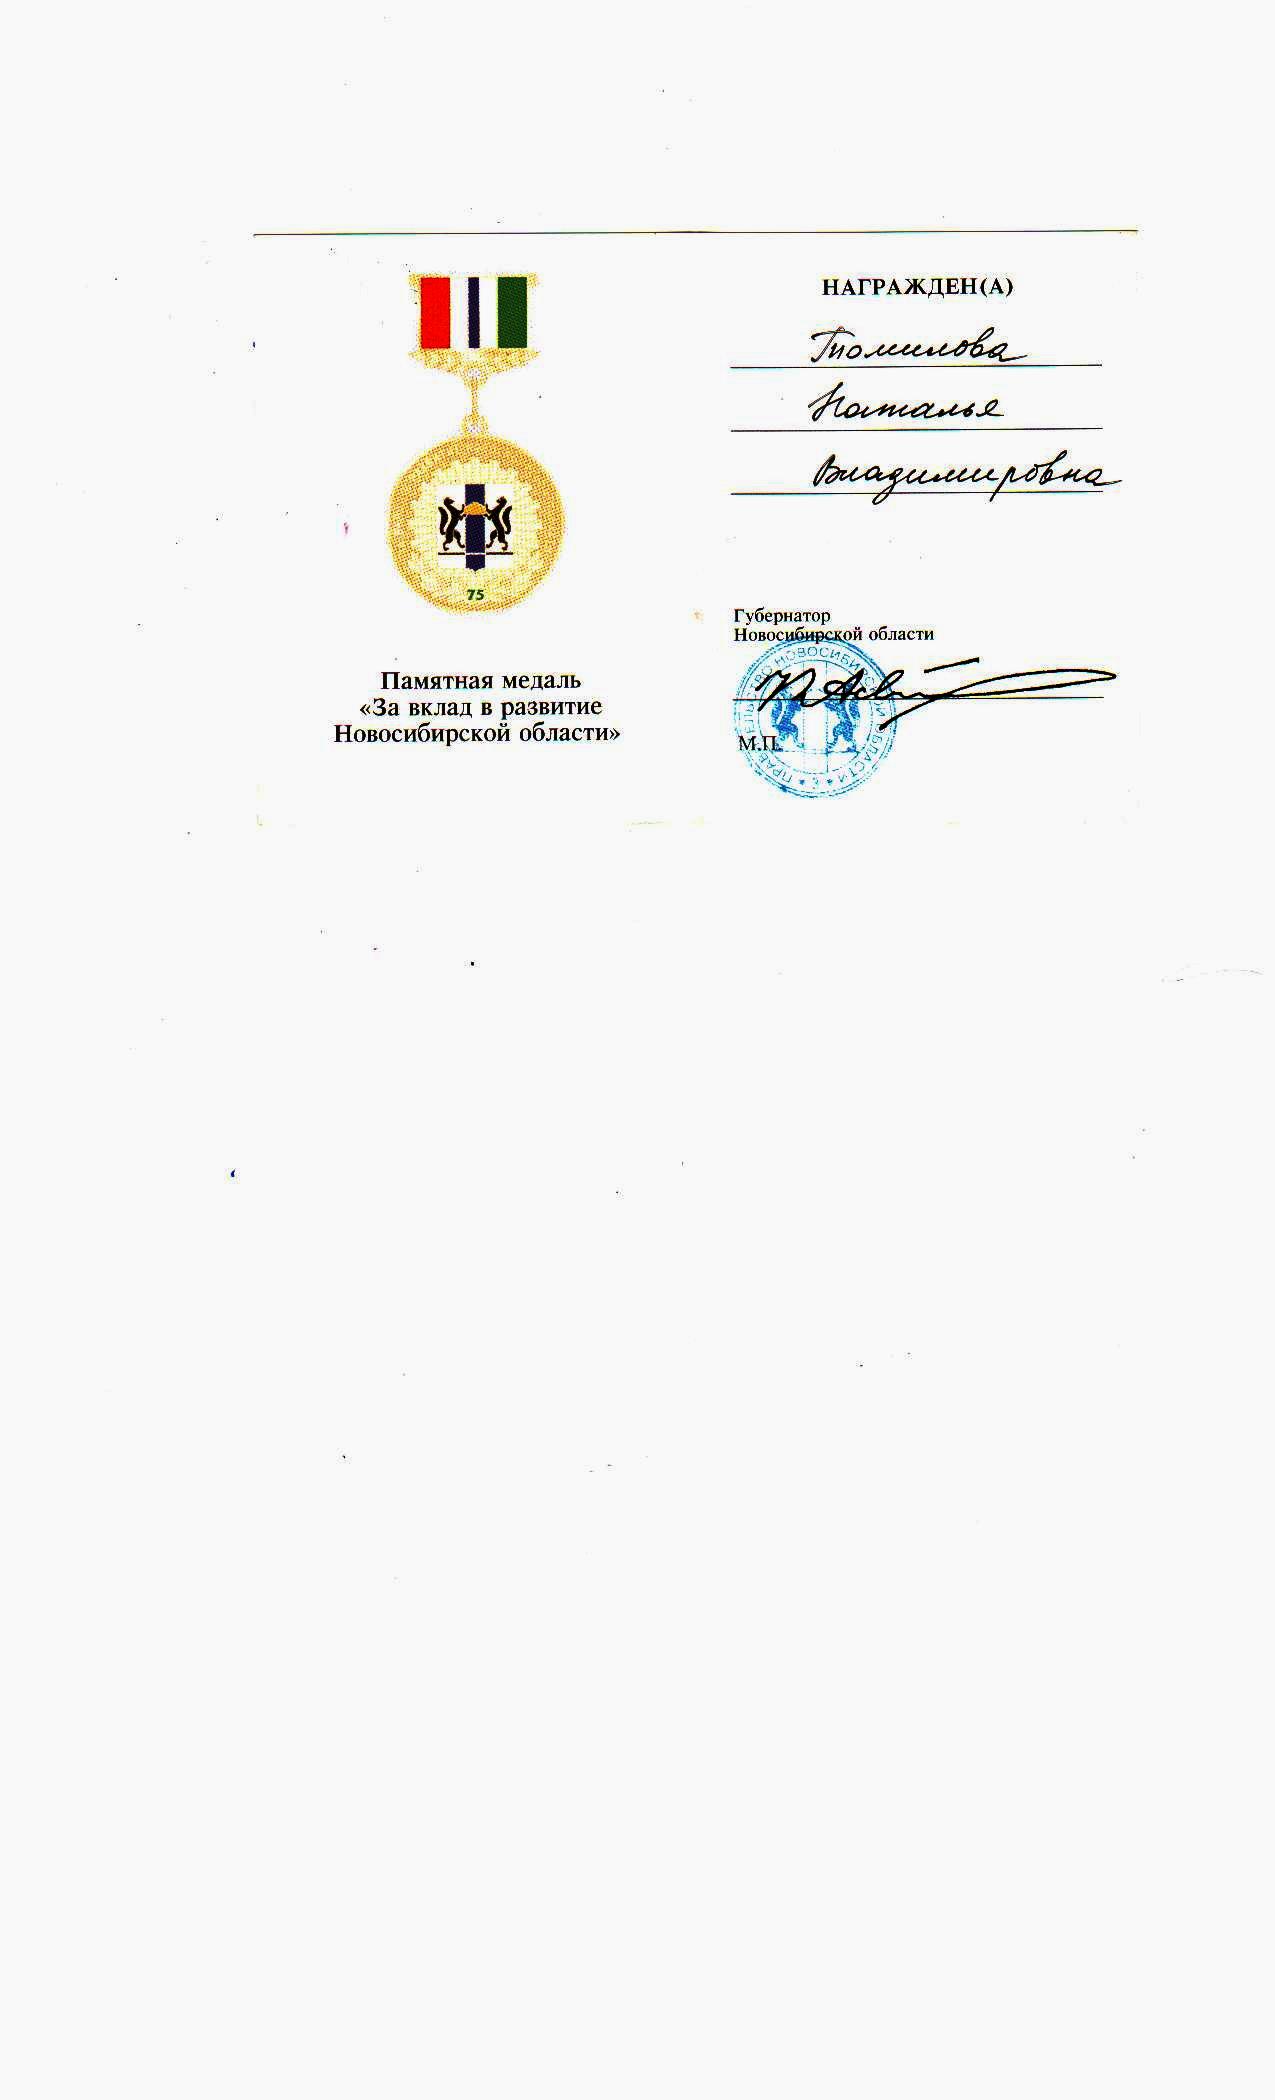 Медаль "За вклад в развитие Новосибирской области"